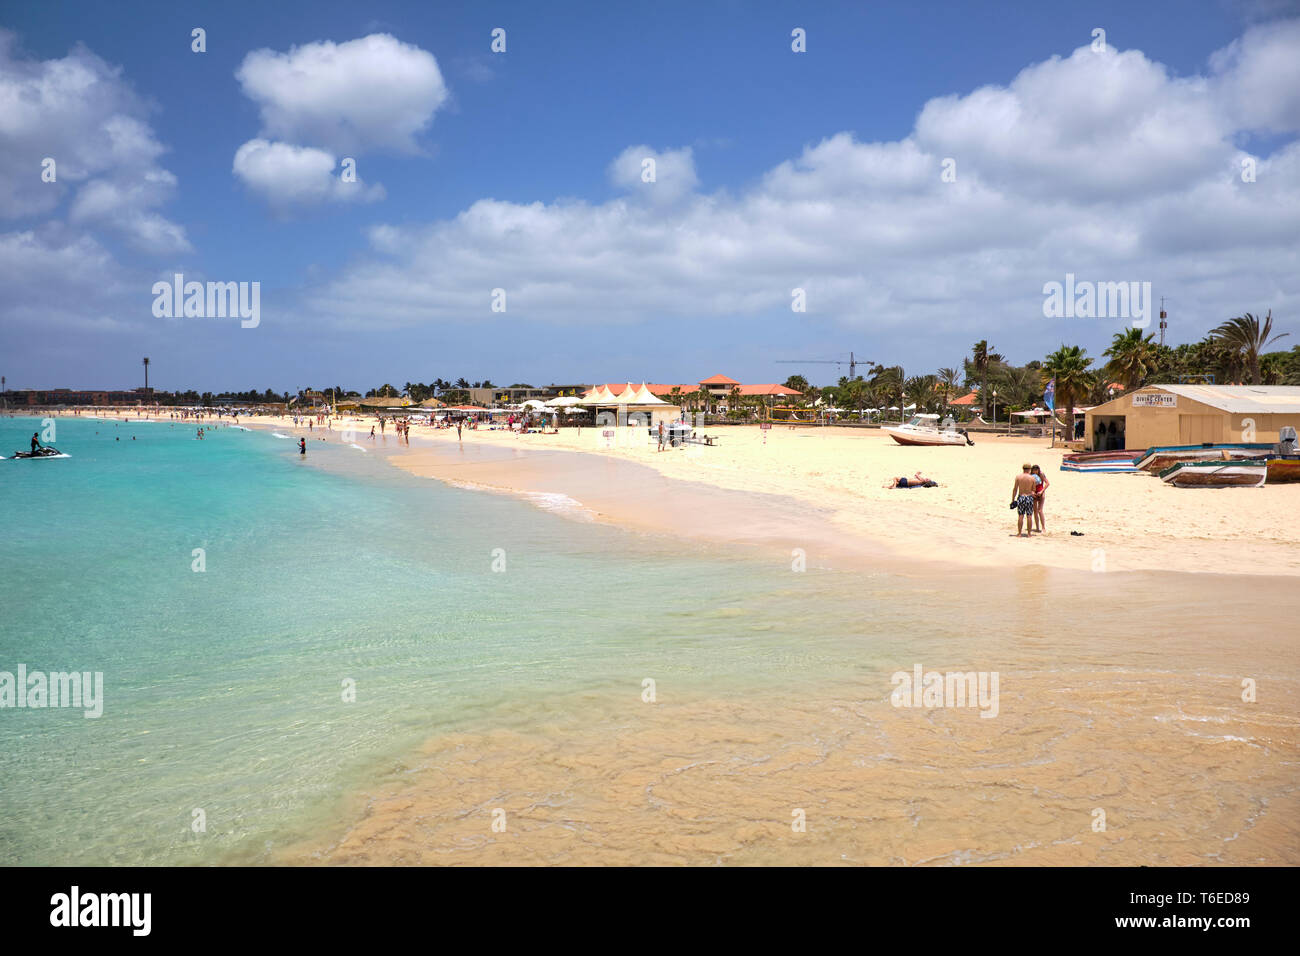 La plage de Santa Maria, île de Sal, Cap-Vert, Afrique Banque D'Images